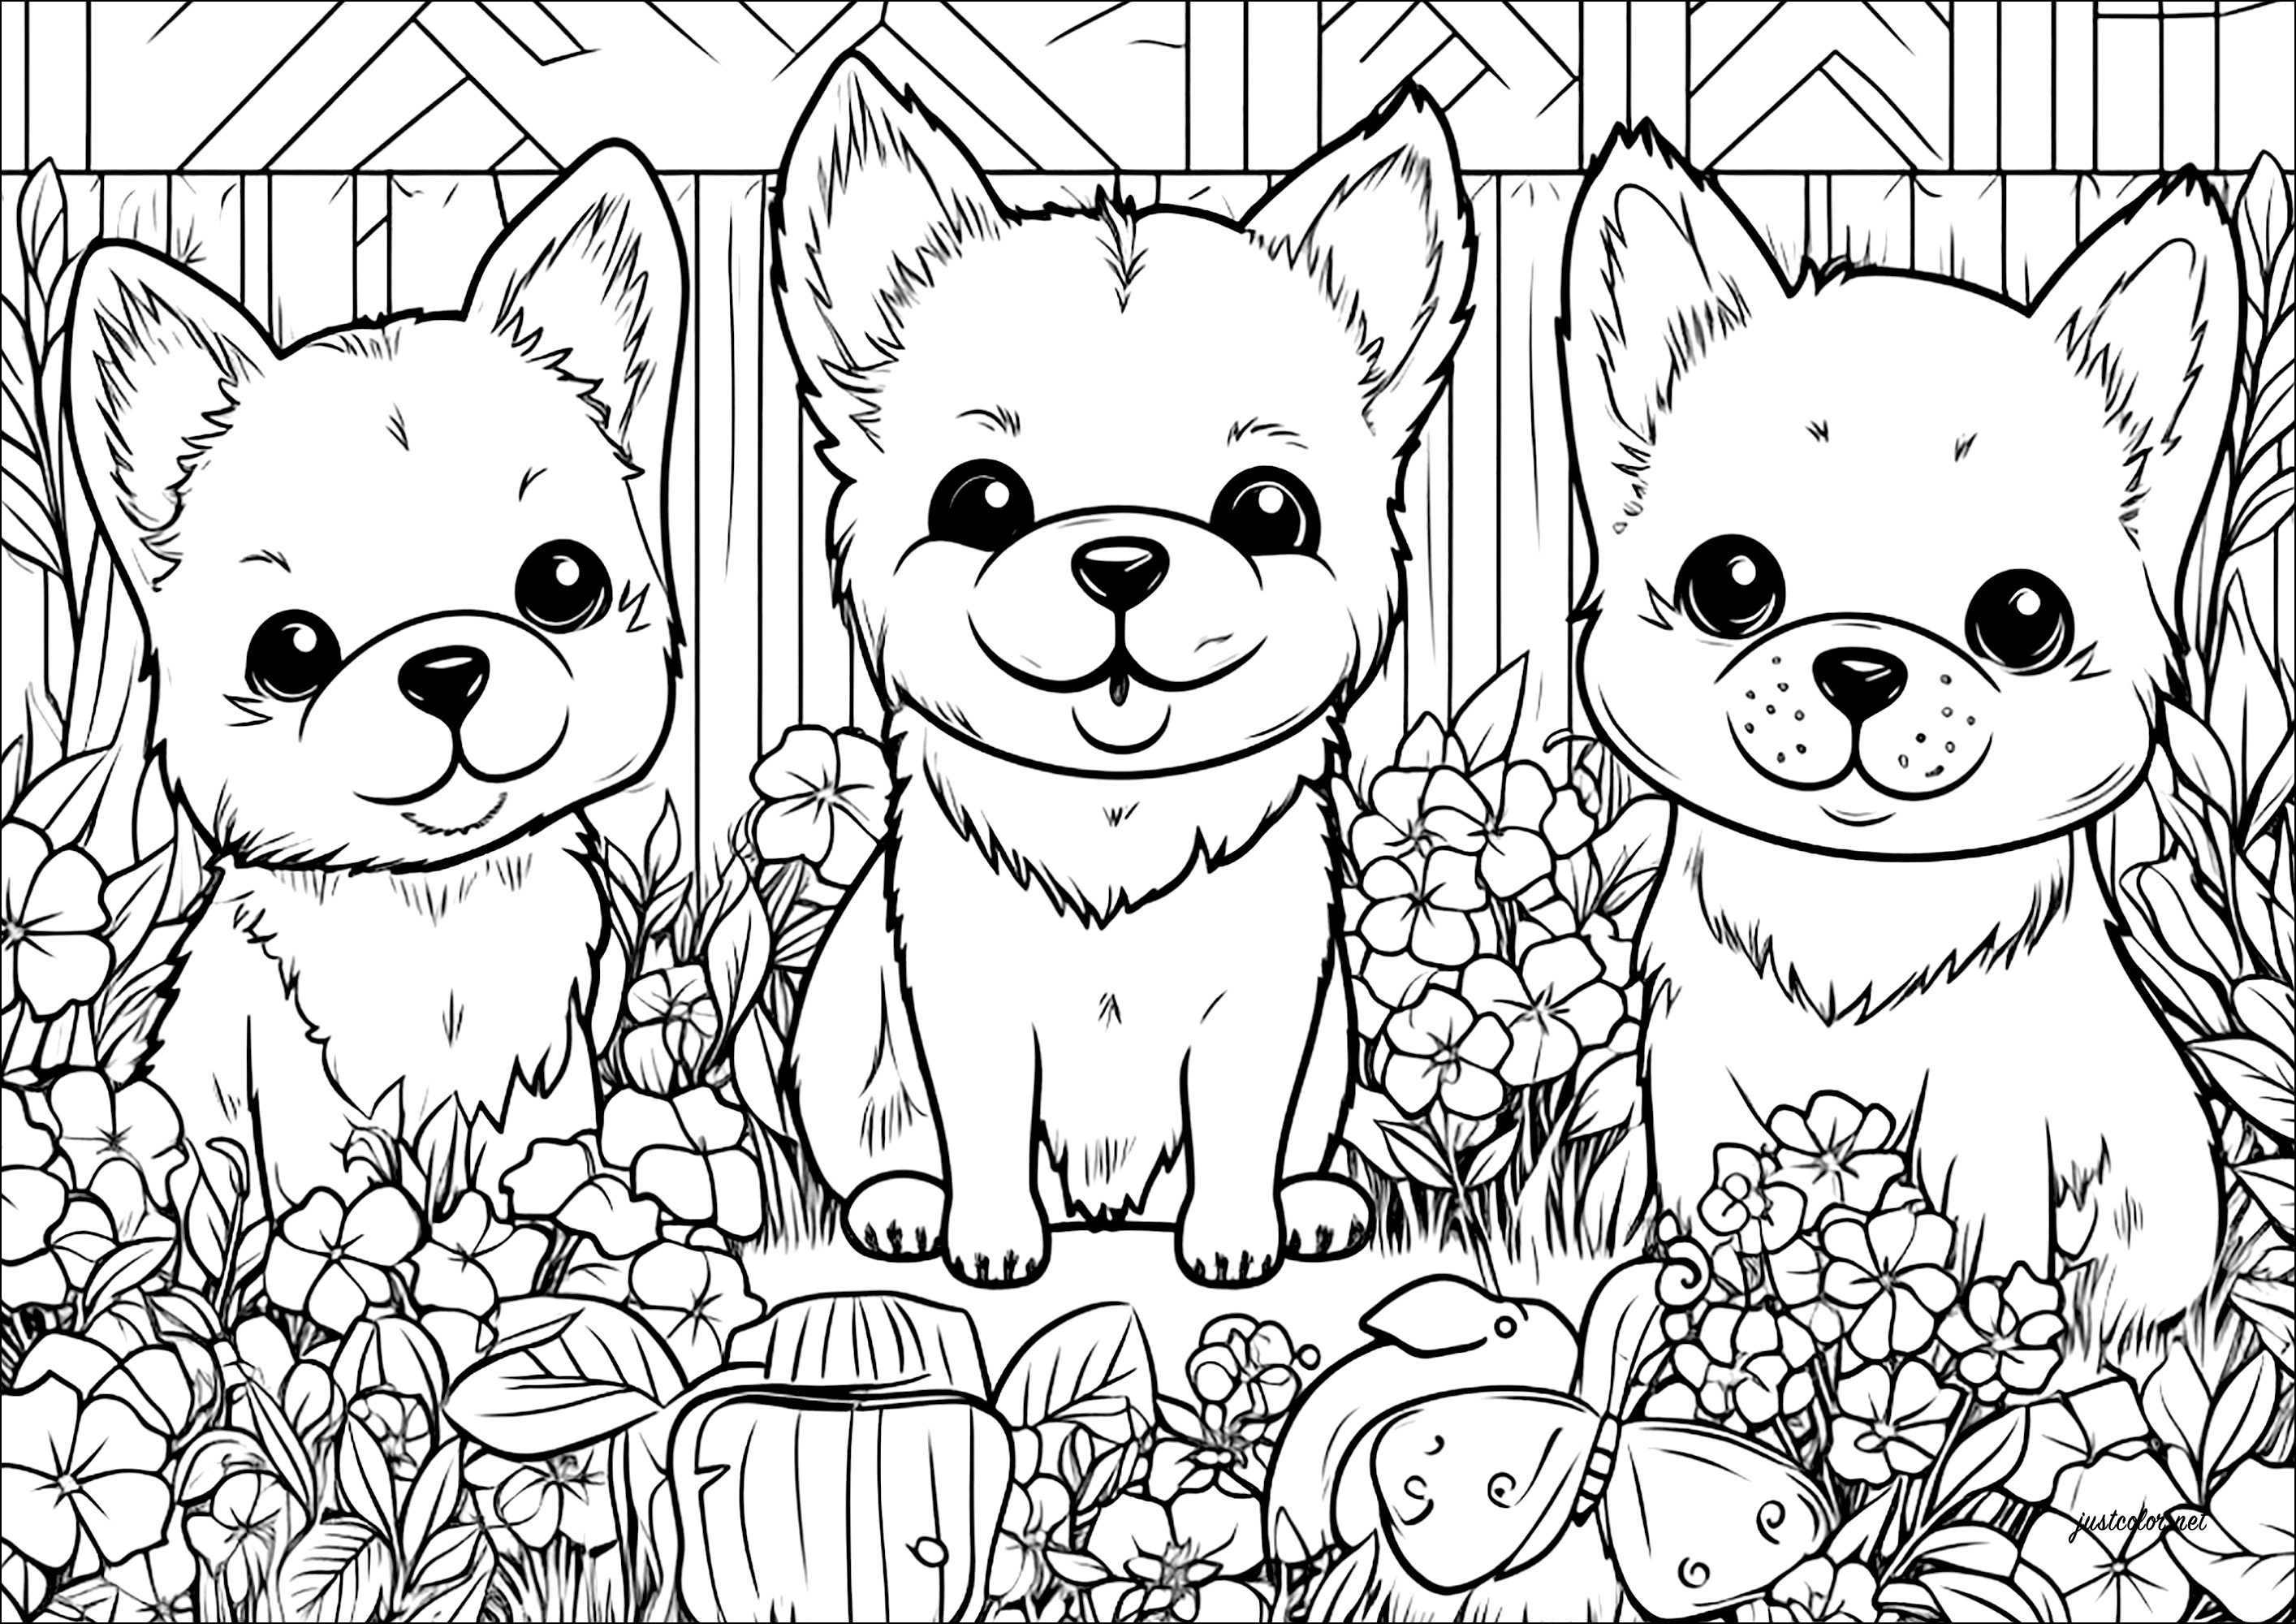 Drei kleine Hunde in einem Blumengarten. Eine niedliche Malvorlage mit vielen Details zu den Blumen und der Vegetation im Garten.